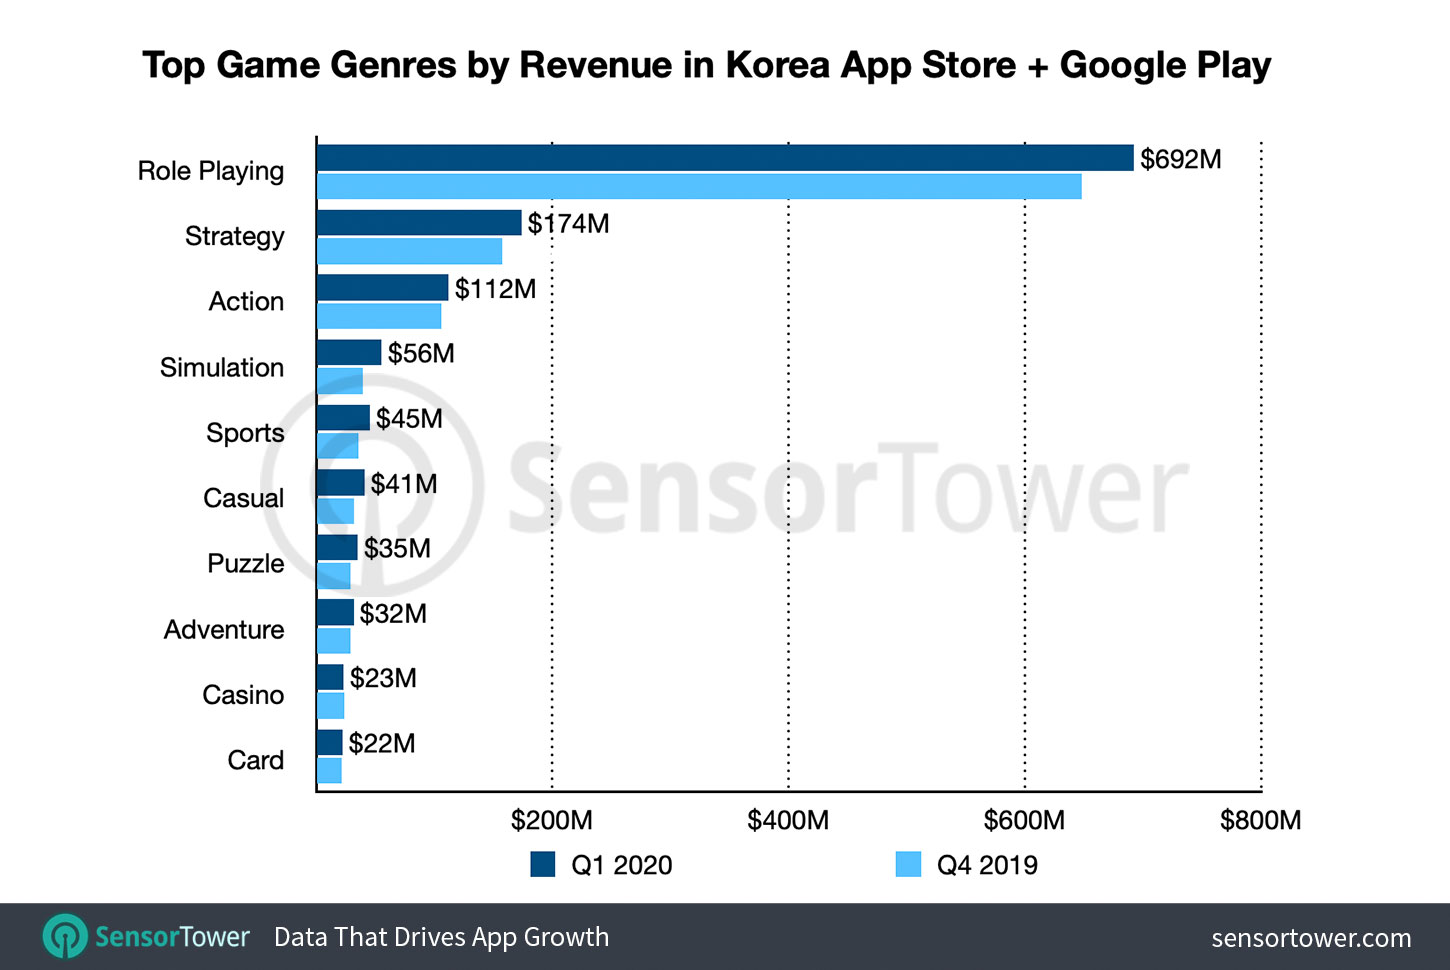 South Korea Mobile Game Genre Revenue for Q1 2020